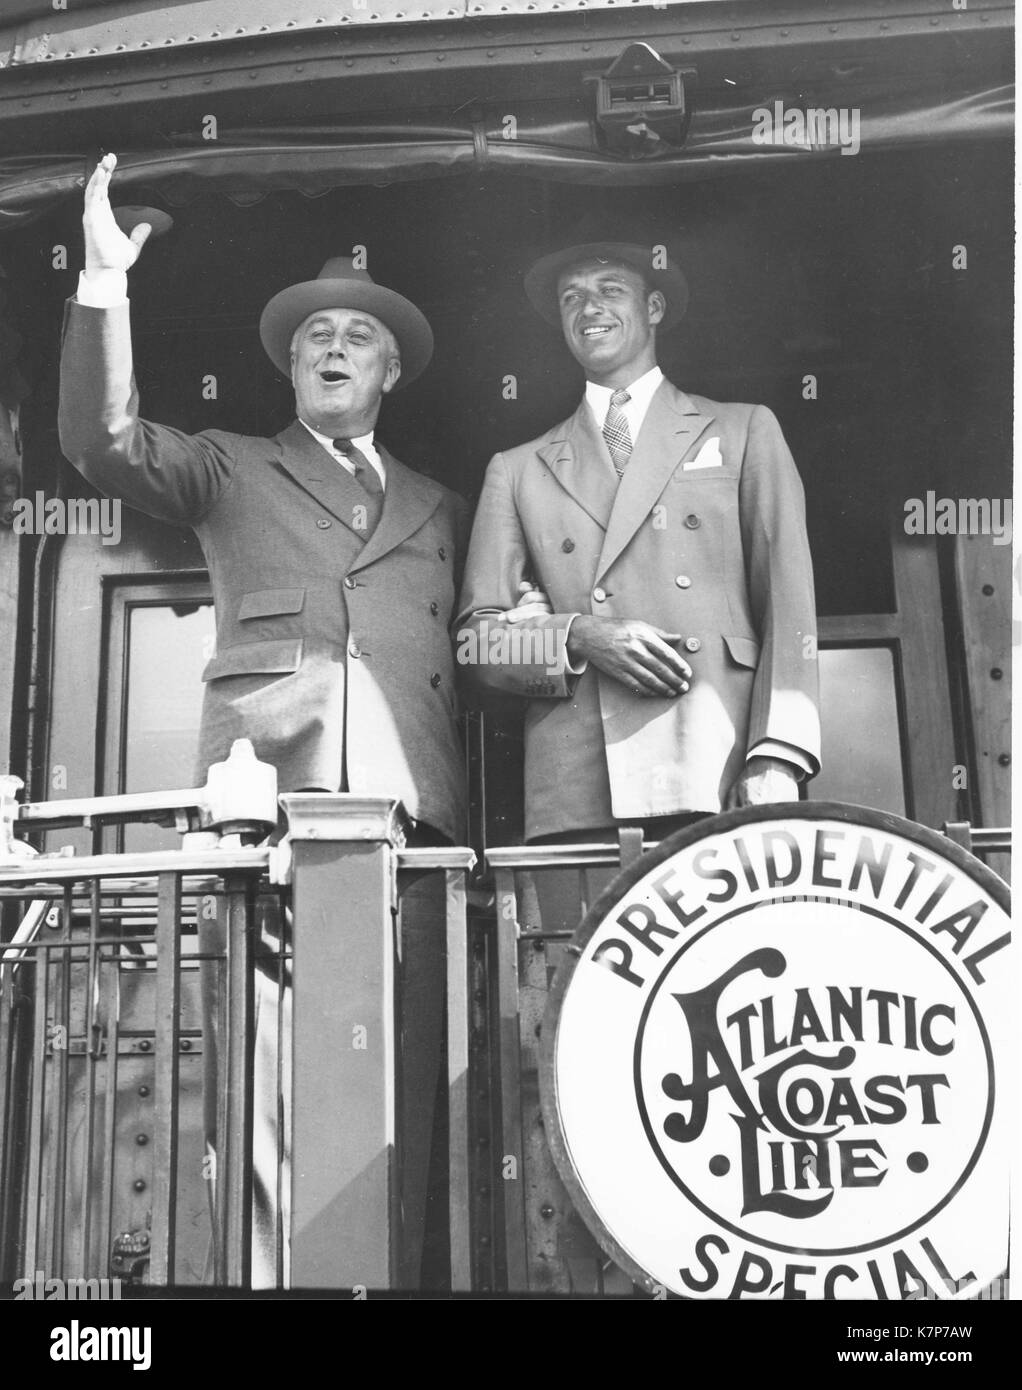 Le président Franklin D. Roosevelt avec fils James Roosevelt à bord arrière de l'élection présidentielle spéciale de l'Atlantic Coast Line train campagne 1934. Banque D'Images